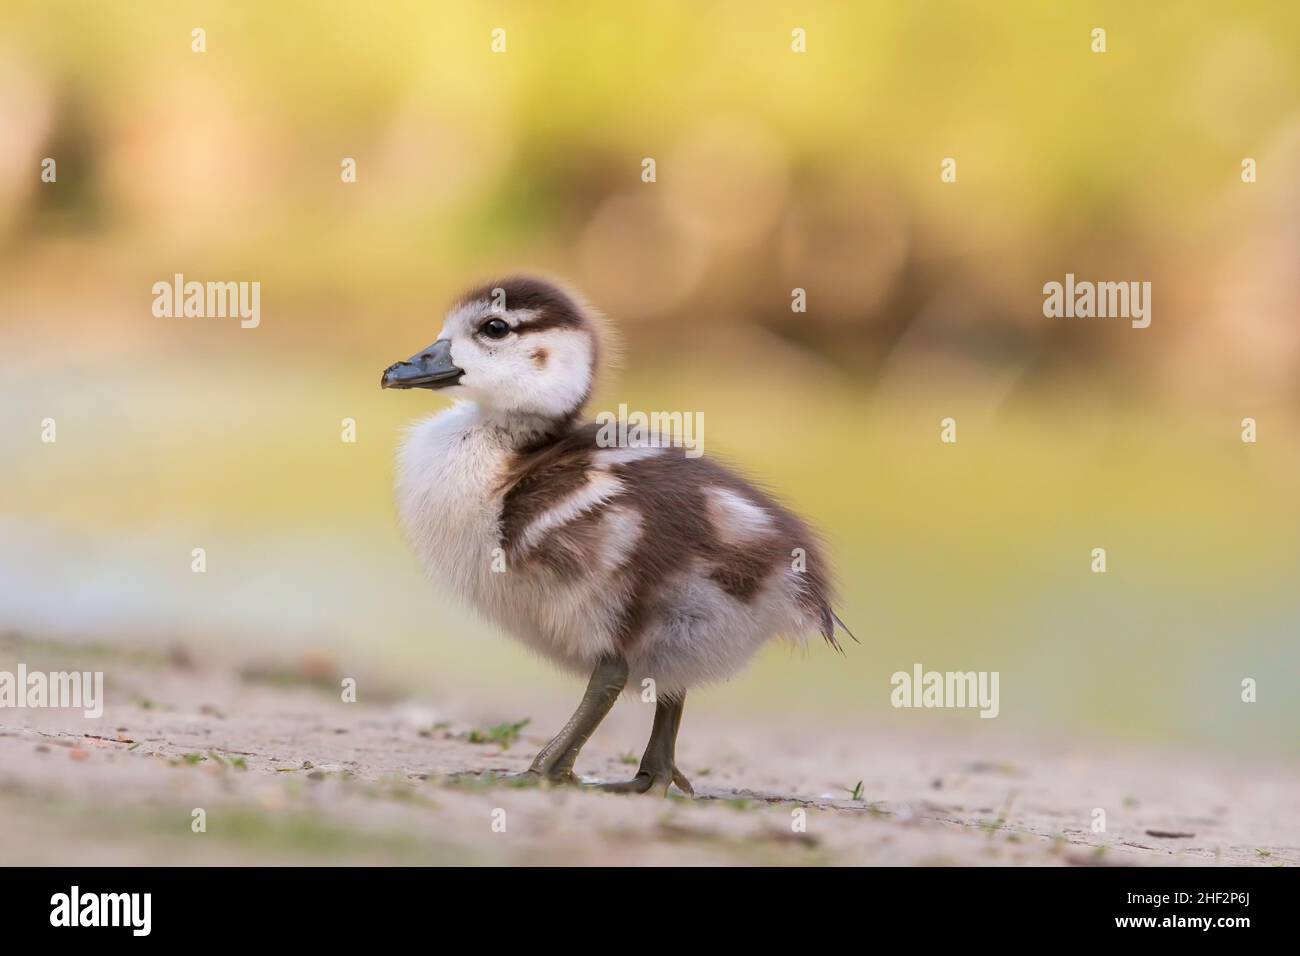 Eine sehr kleine Ente geht über eine Wiese. Das Foto hat einen hellen Hintergrund und ein schönes Bokeh. Stockfoto